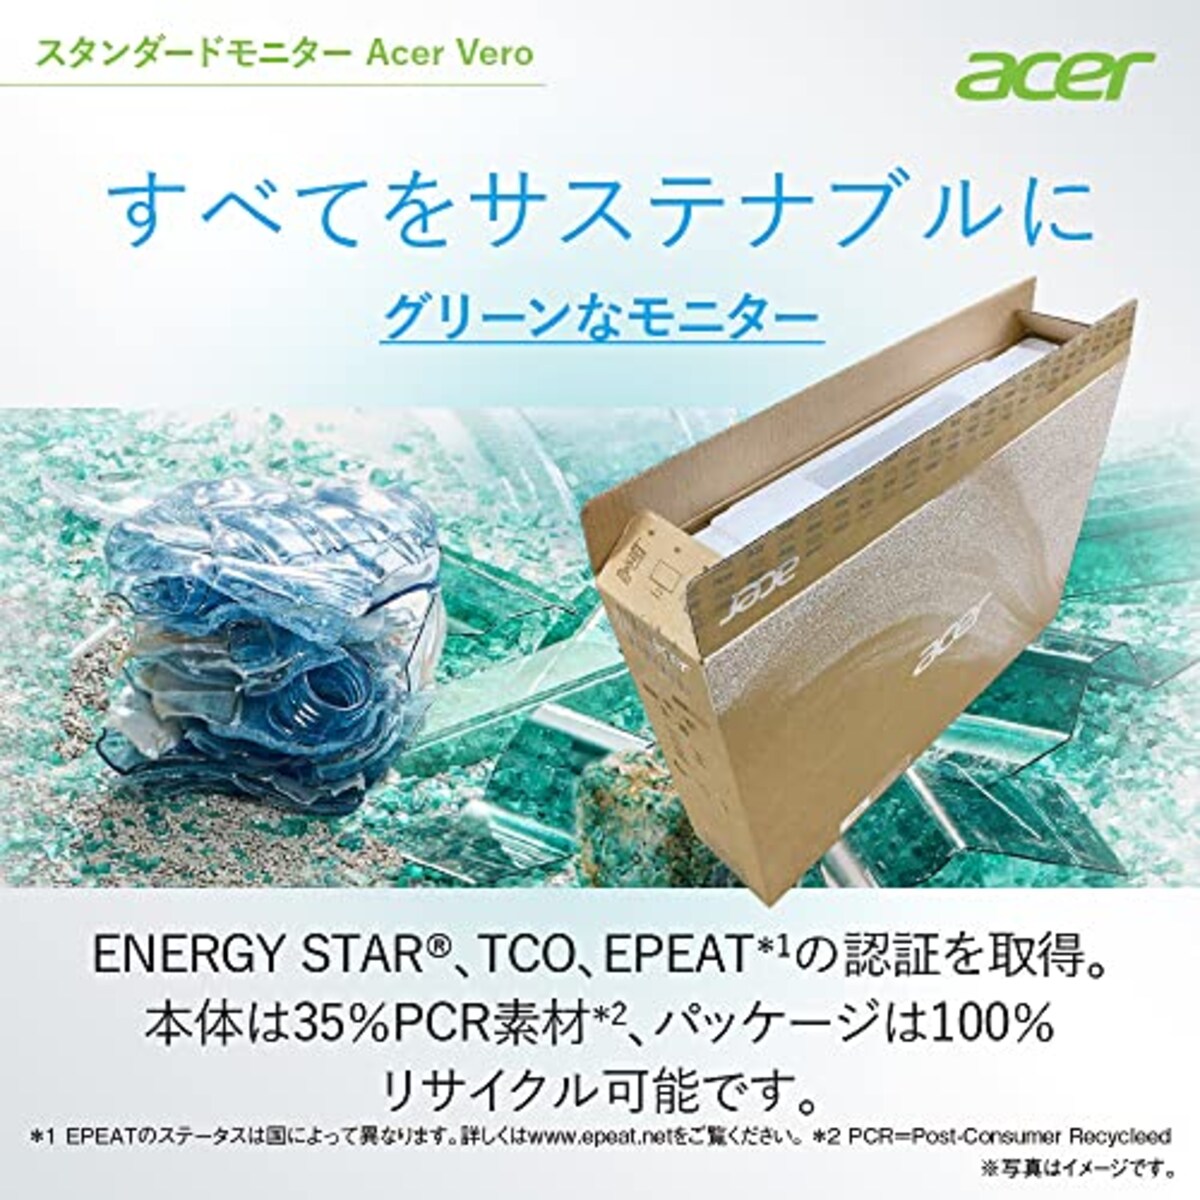  日本エイサー Acer スタンダードモニターVero 21.5インチ B227QBbmiprxv フルHD VA 4ms(GTG) 75Hz エコデザイン再生プラ35%使用画像3 